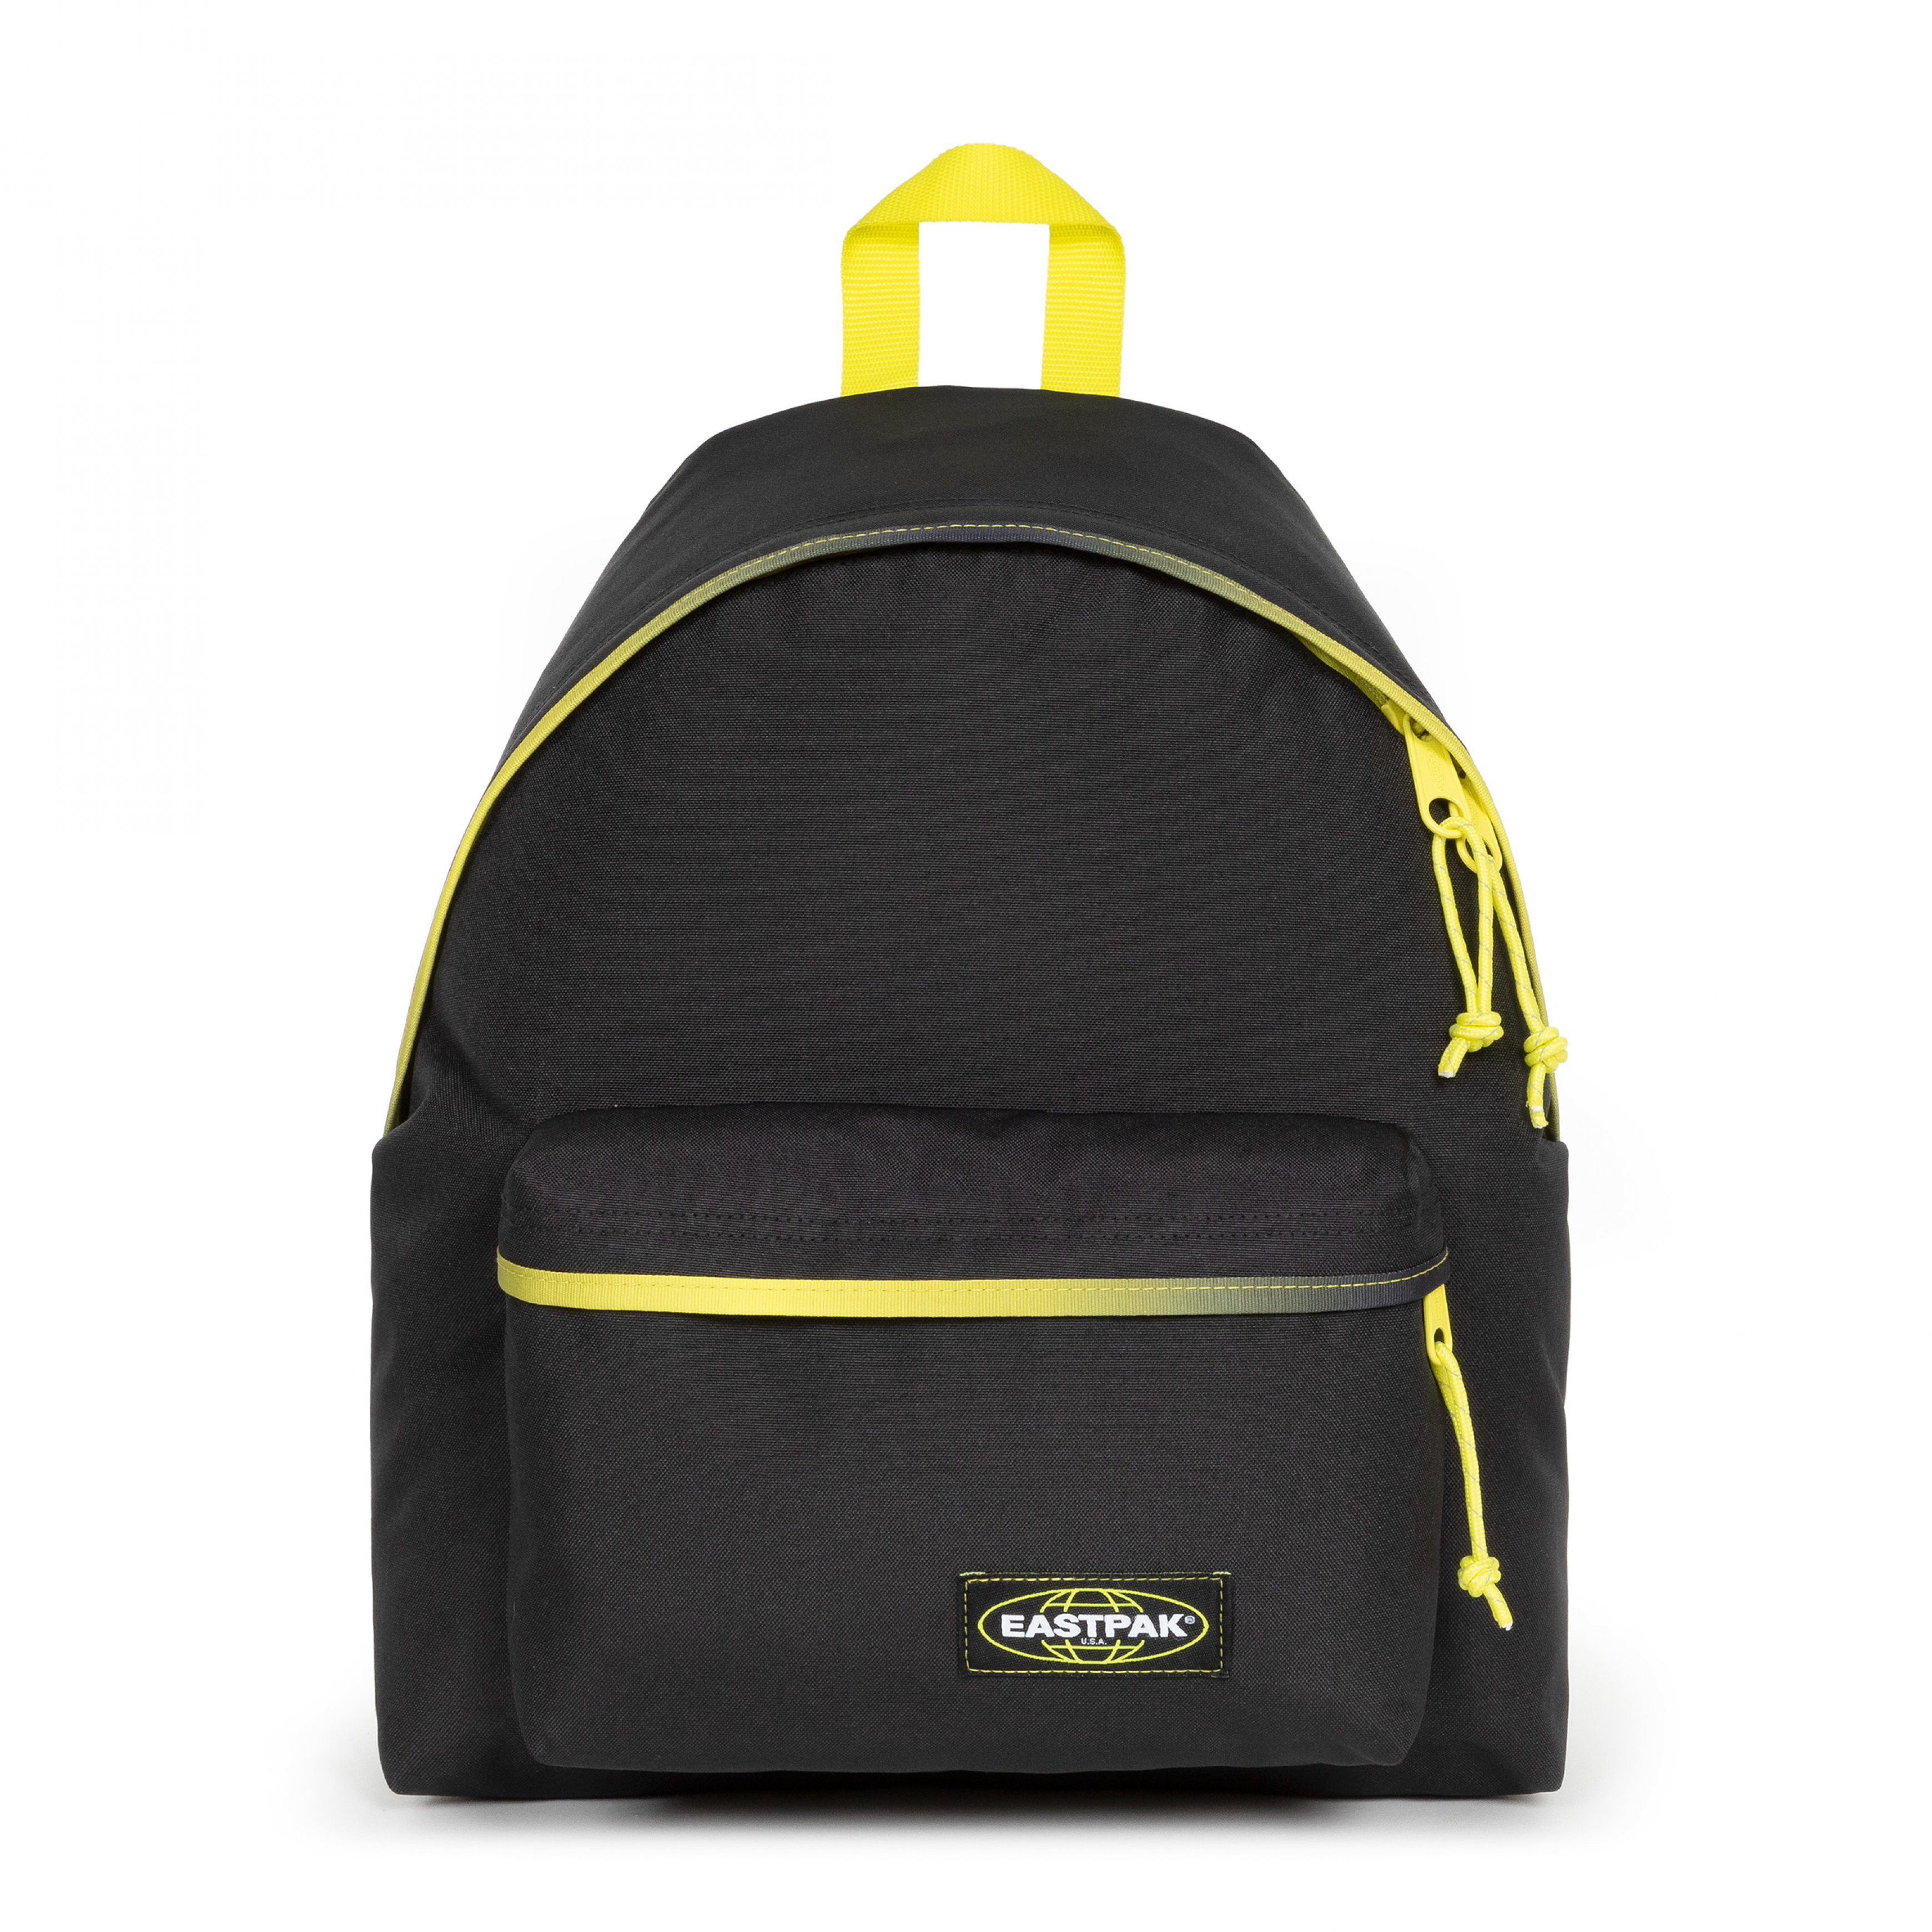 Eastpak - Padded Pak'r Kontrast Grade Lime Backpack, Black, large image number 0